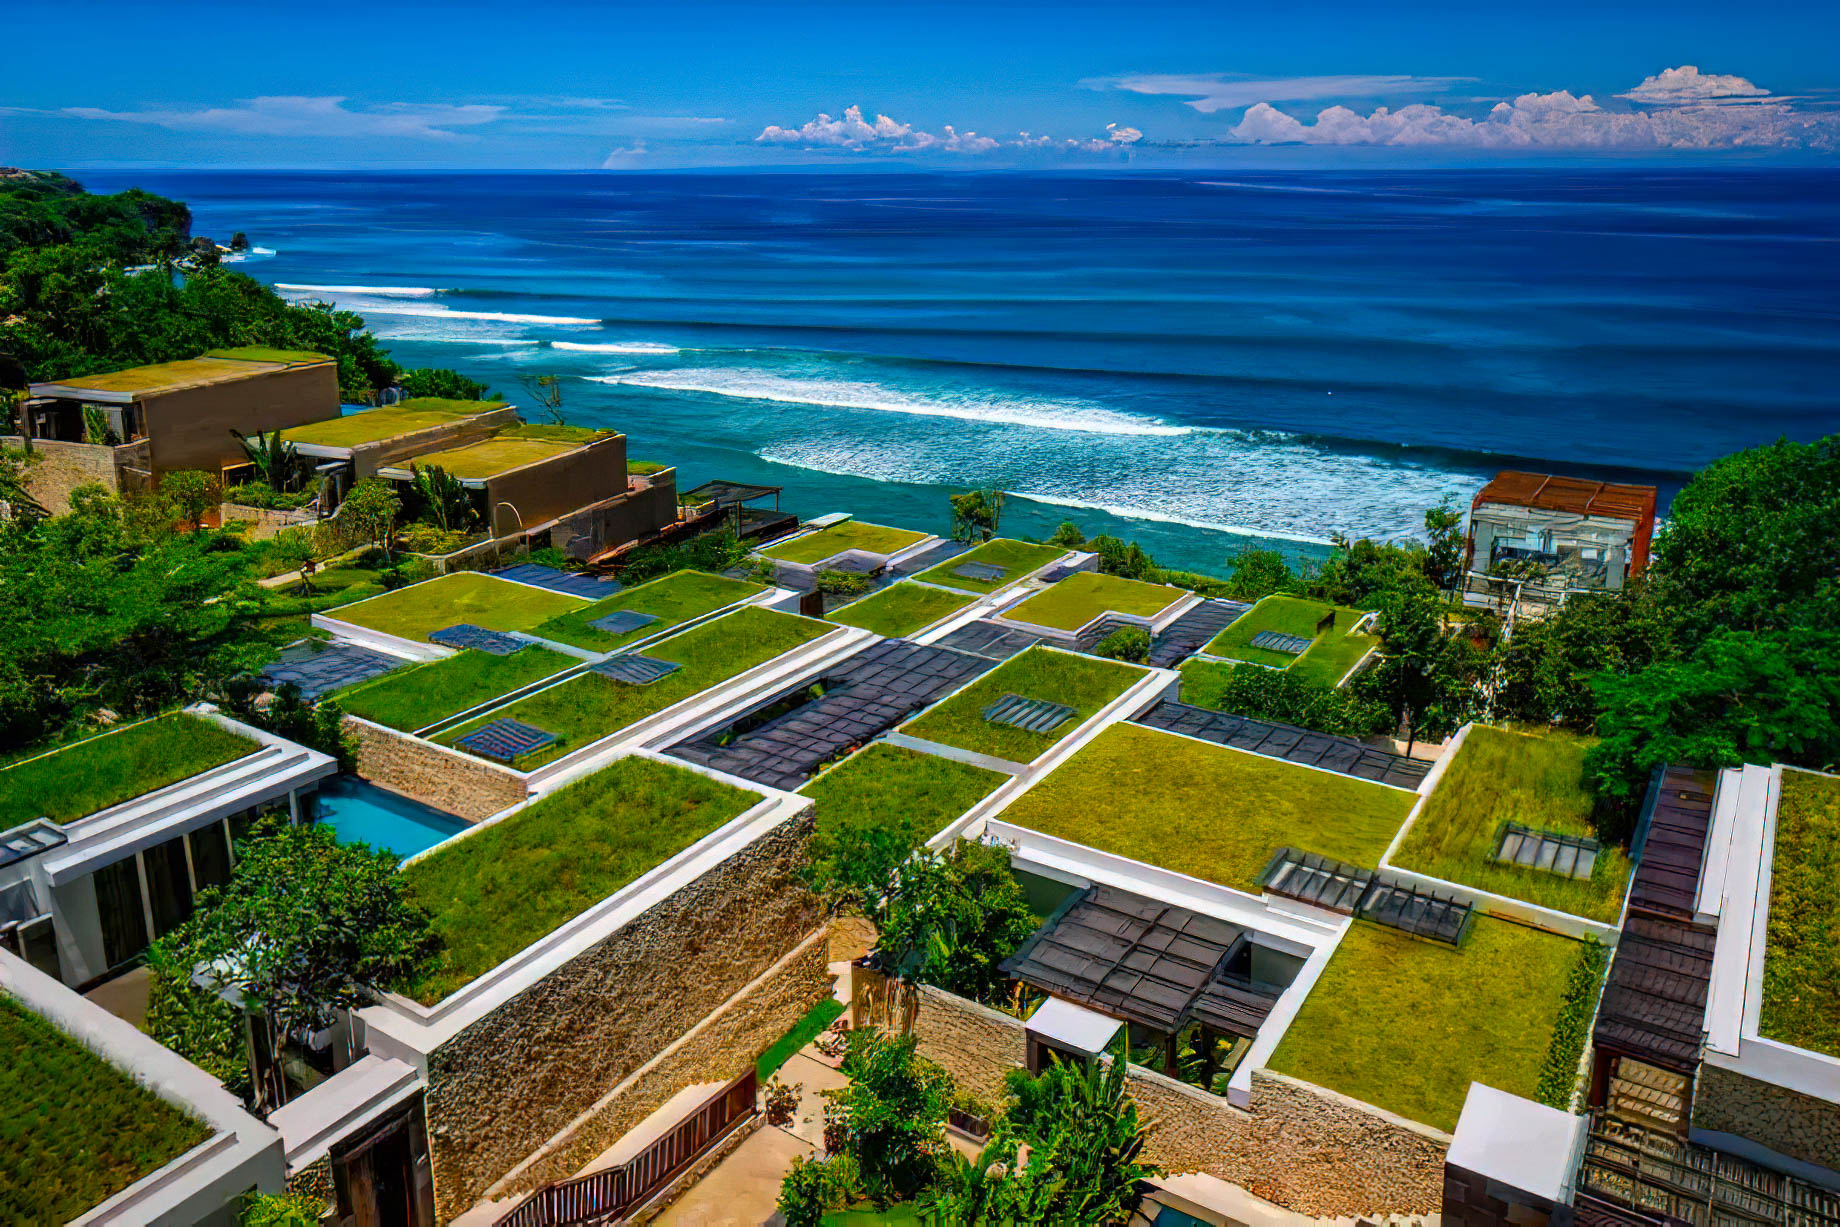 Anantara Uluwatu Bali Resort – Bali, Indonesia – Ocean View